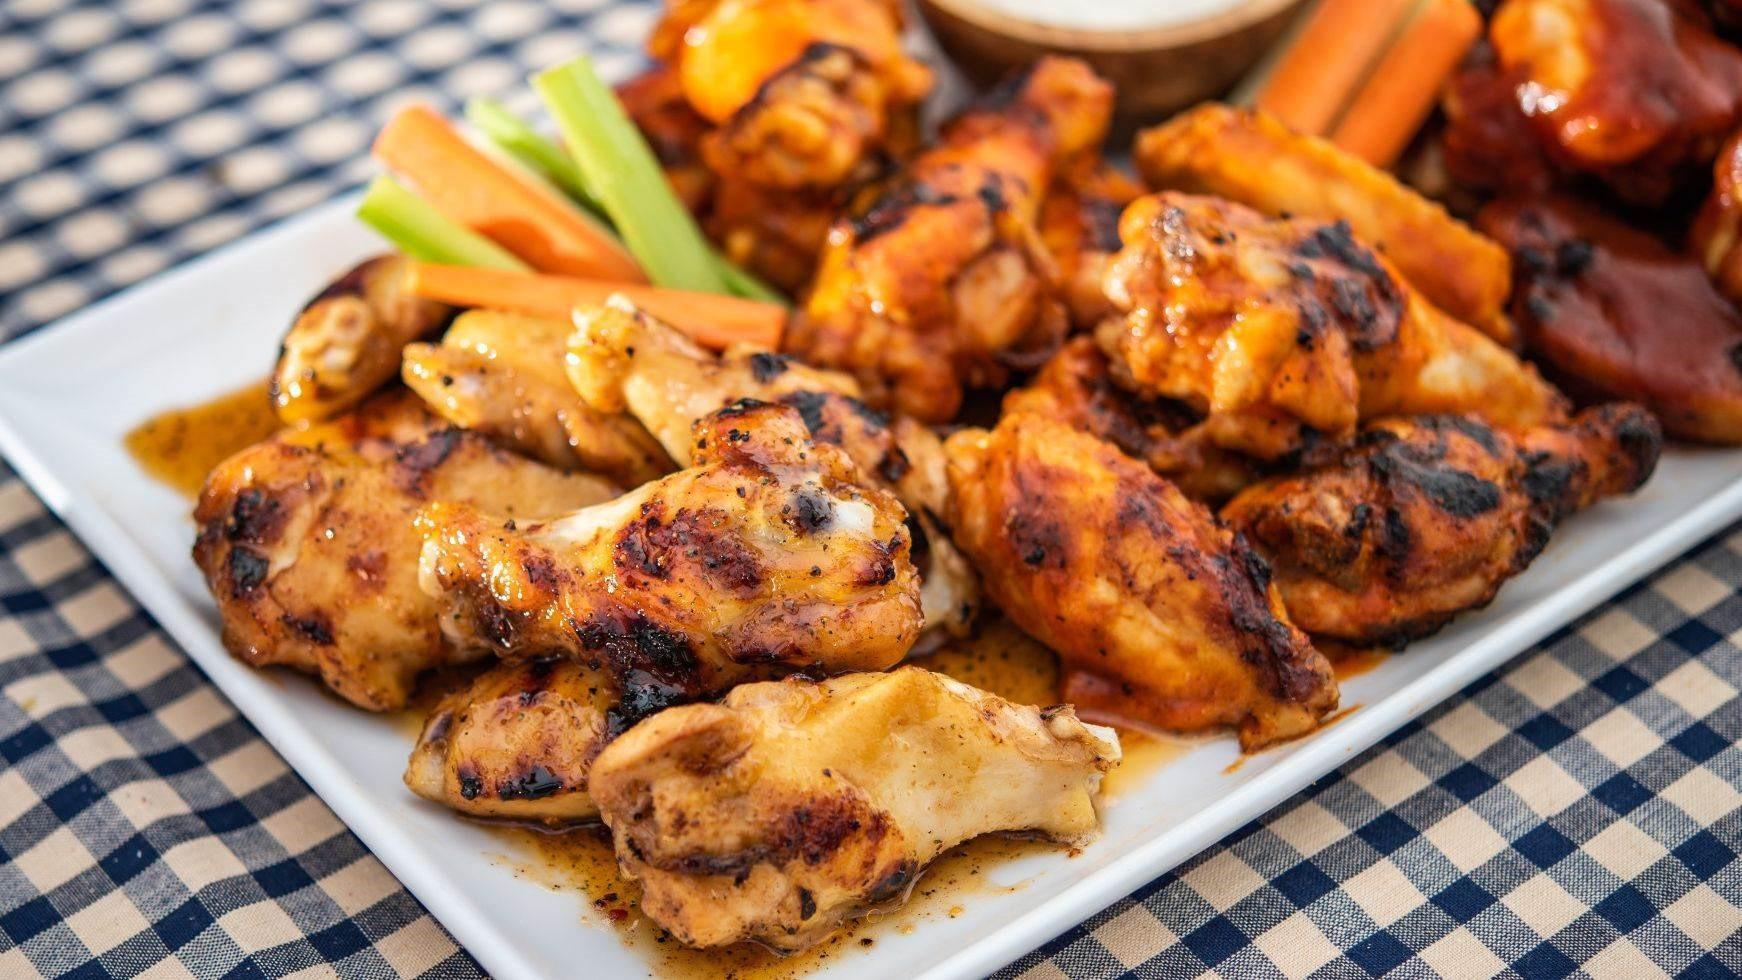 GIA VỊ ĂN KIÊNG VỊ GÀ NƯỚNG ÍT MUỐI McCormick Grill Mates Montreal Chicken Seasoning 25% Less Sodium 81g (2.87oz)